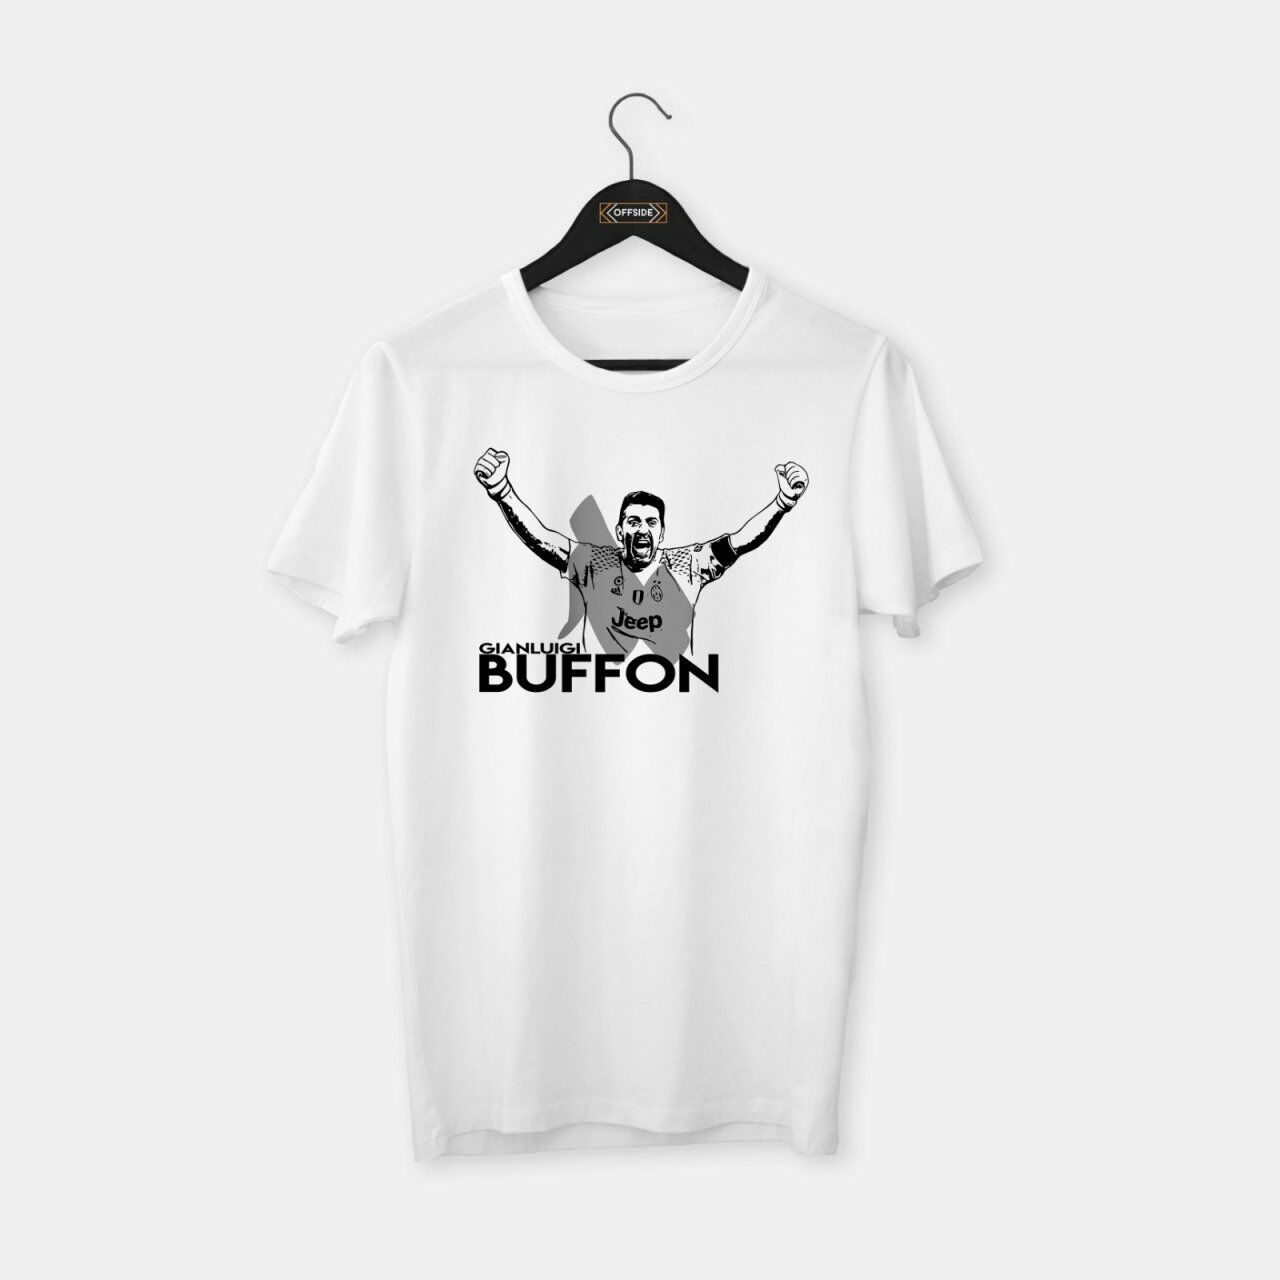 Buffon III T-shirt